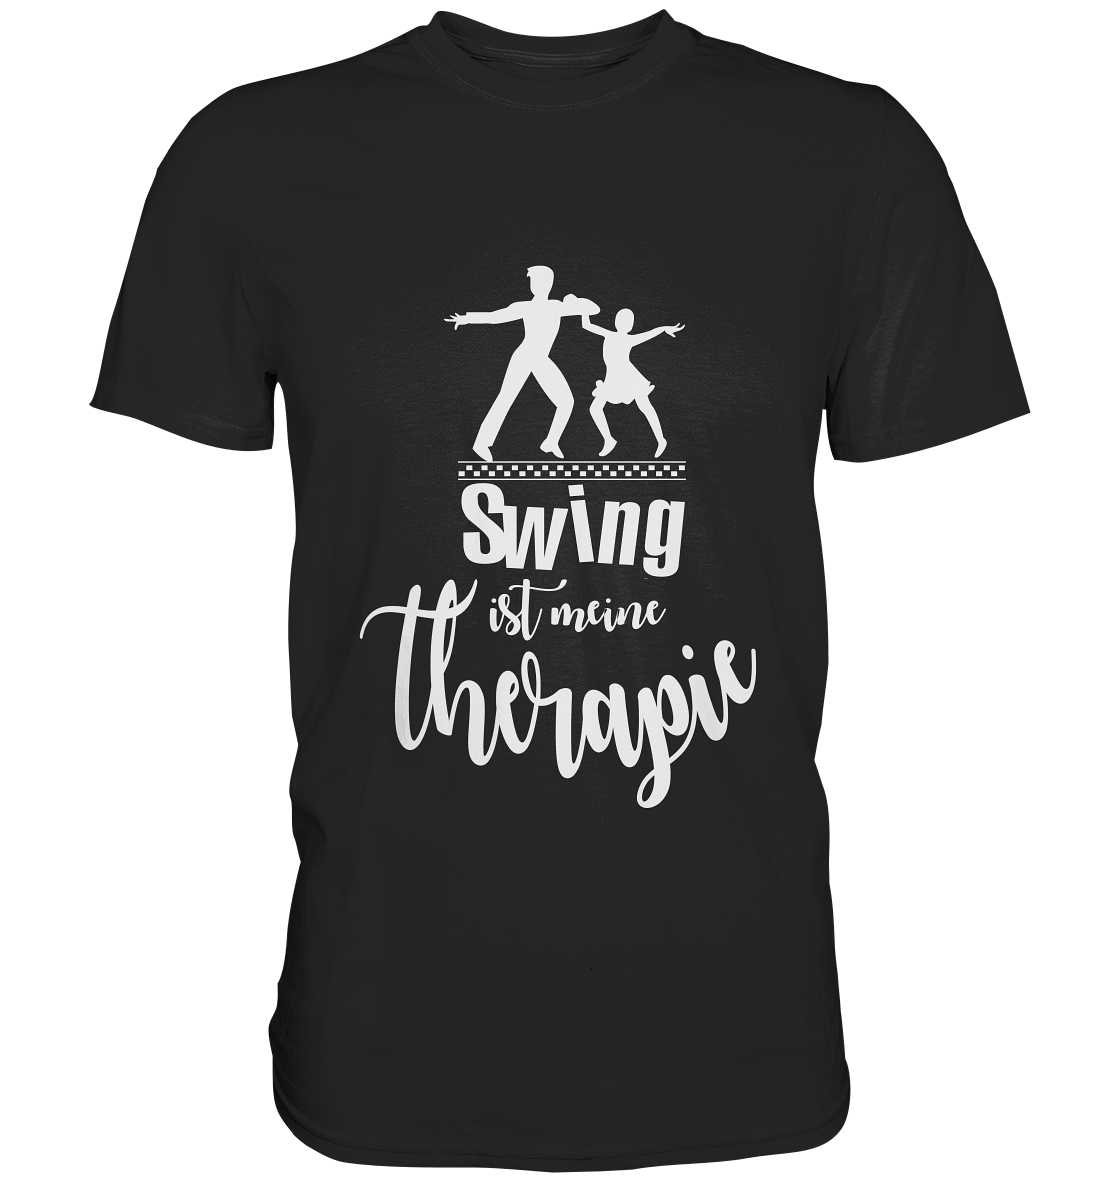 Swing ist meine Therapie. - Unisex Premium Shirt